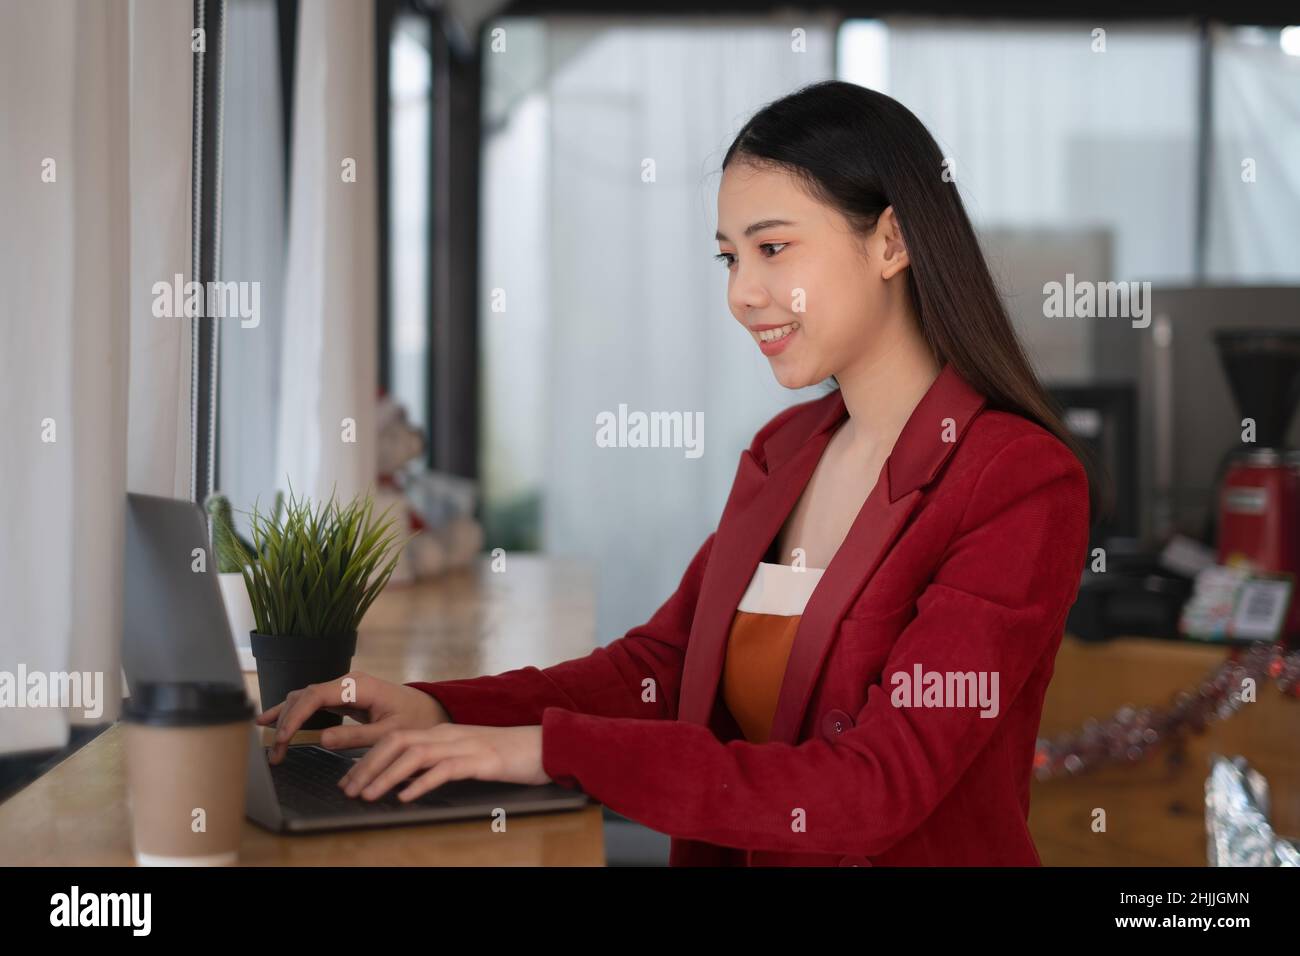 Une femme d'affaires utilisant un ordinateur portable pour la cyber-sécurité de son compte d'épargne, entreprise, technologie, futur, concept de ressources numériques. Banque D'Images